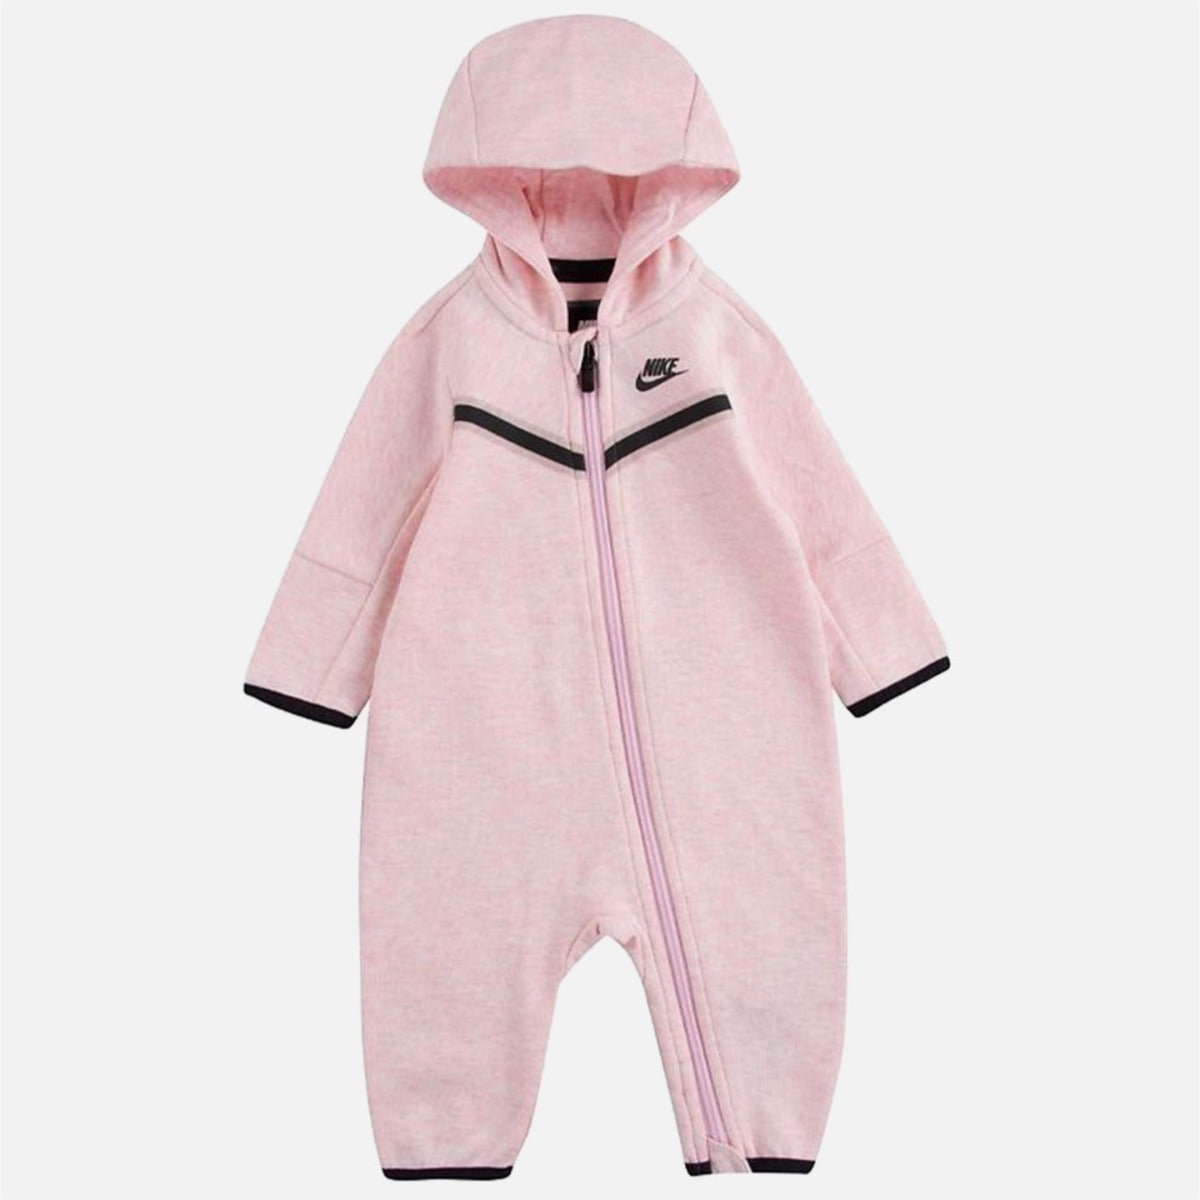 Nike Sportswear Tech Fleece Baby Onesie - Pink/Black